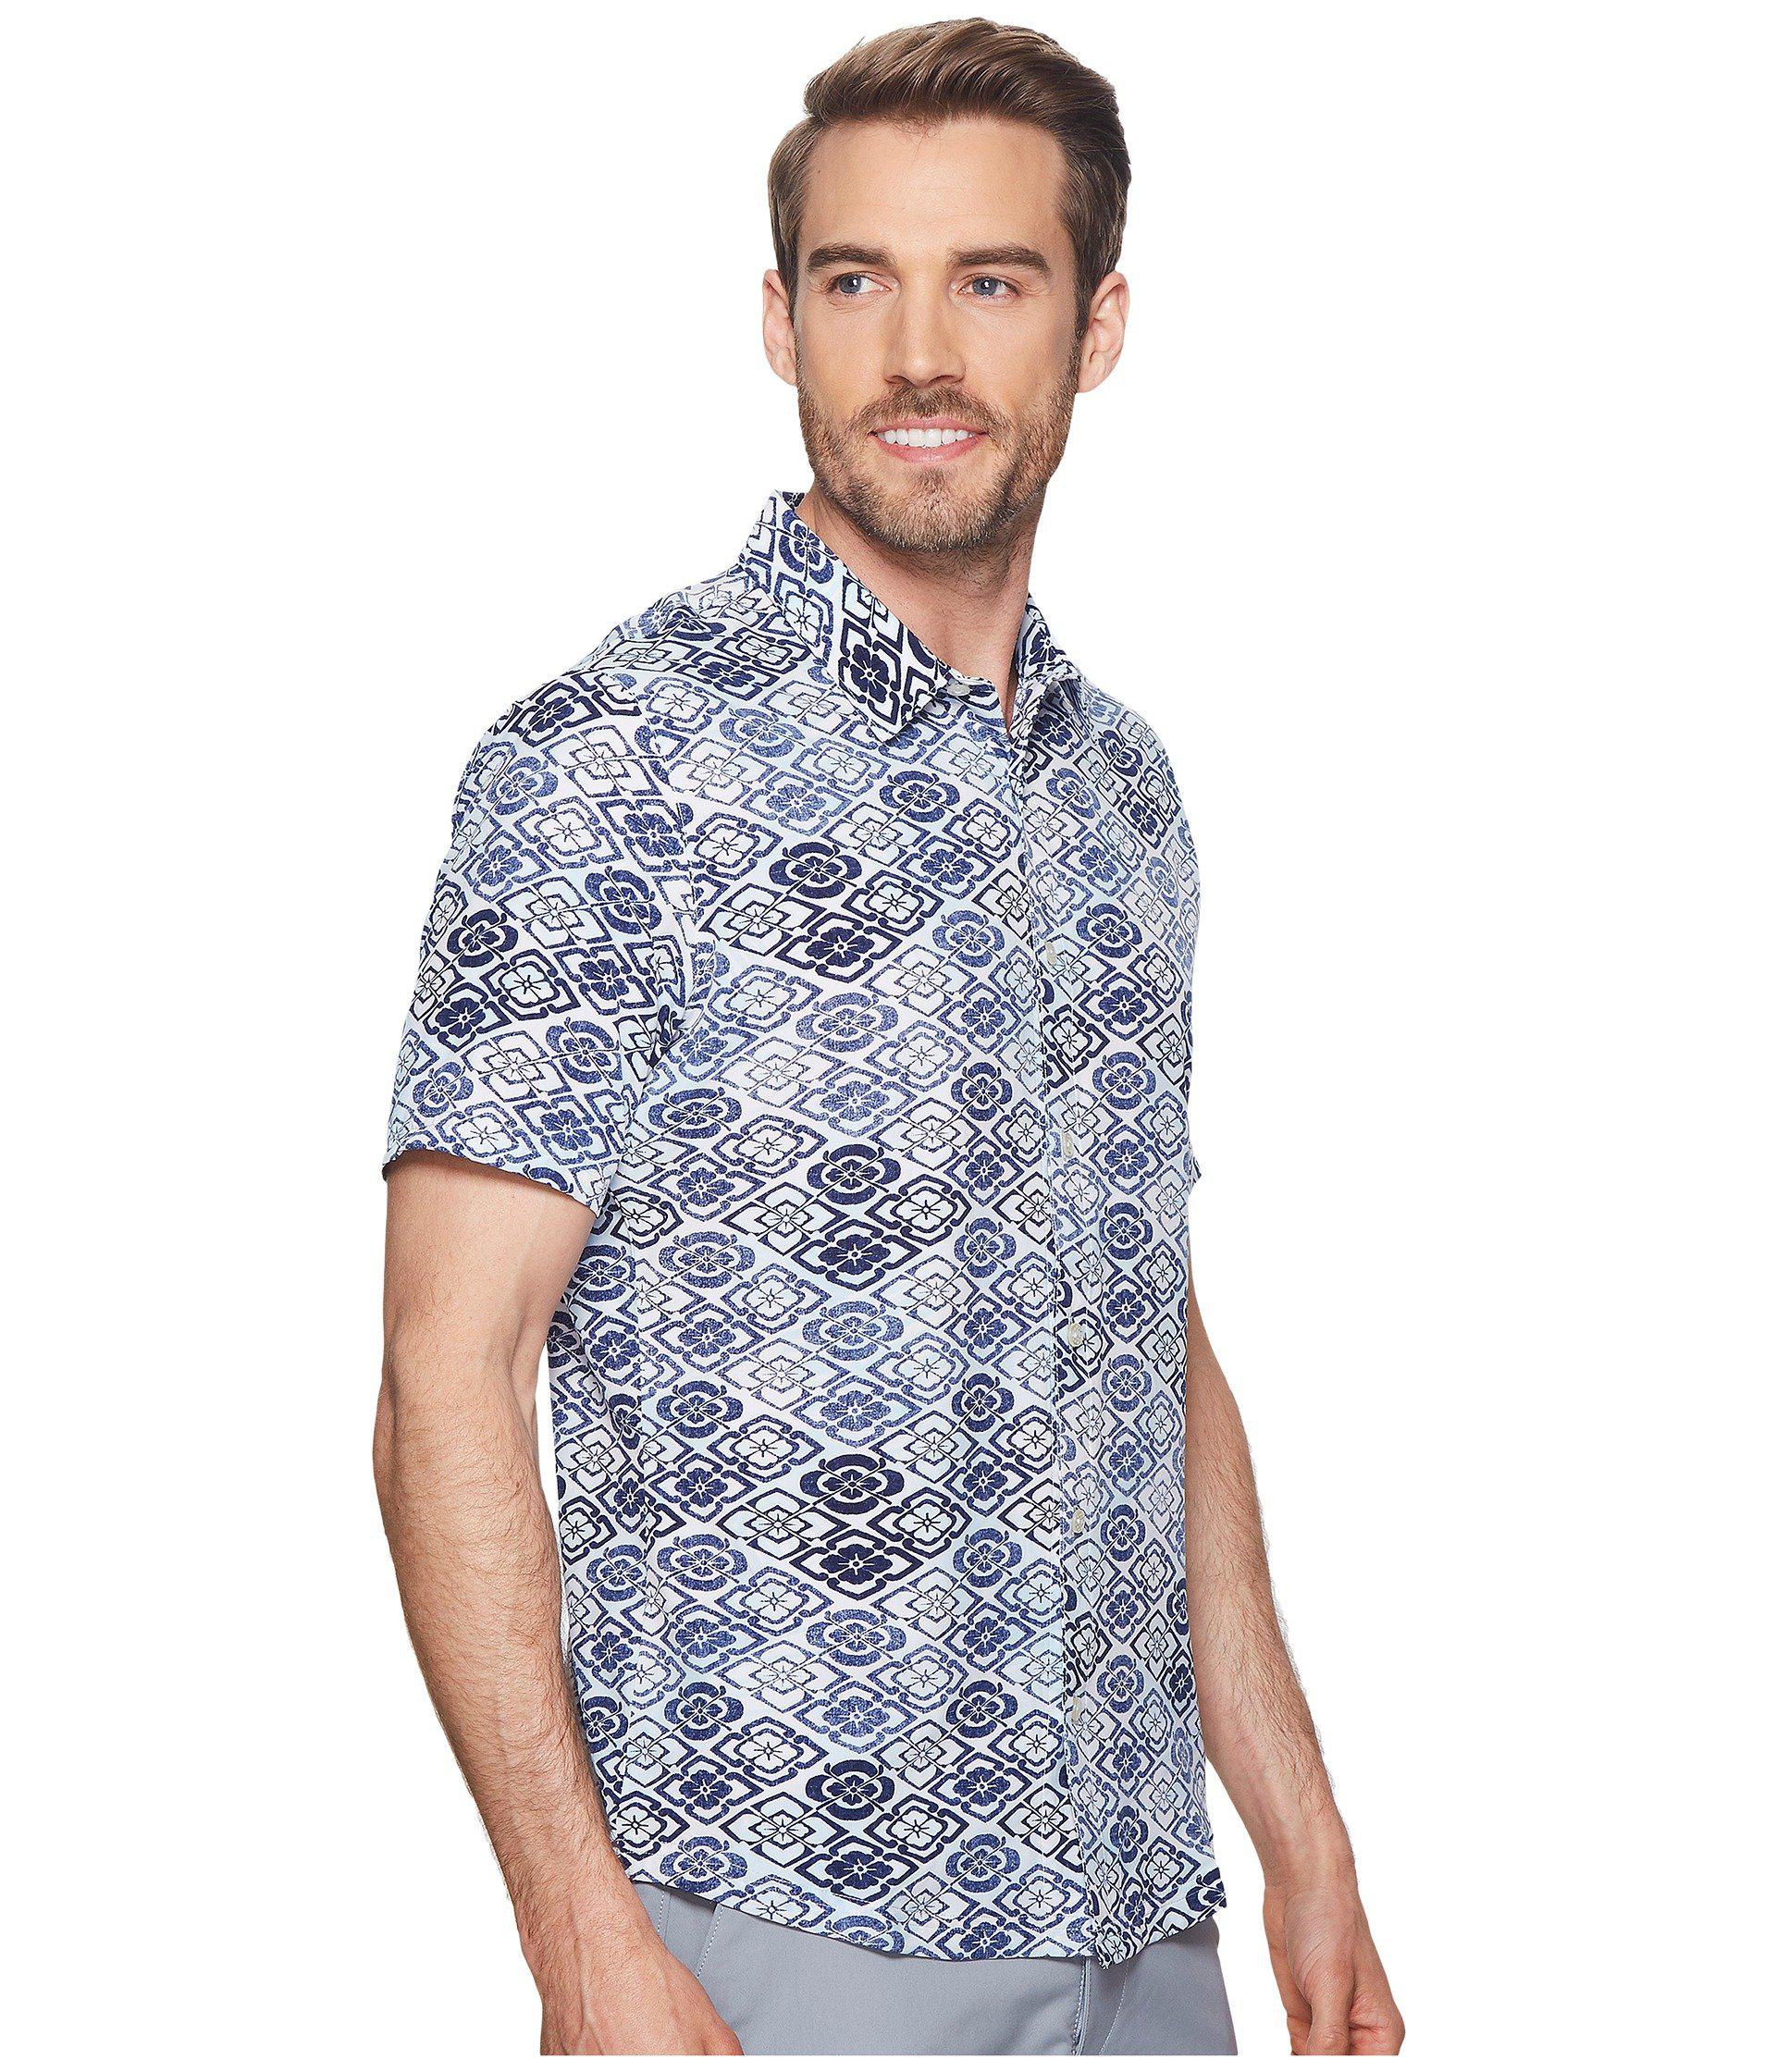 puma hawaiian shirt